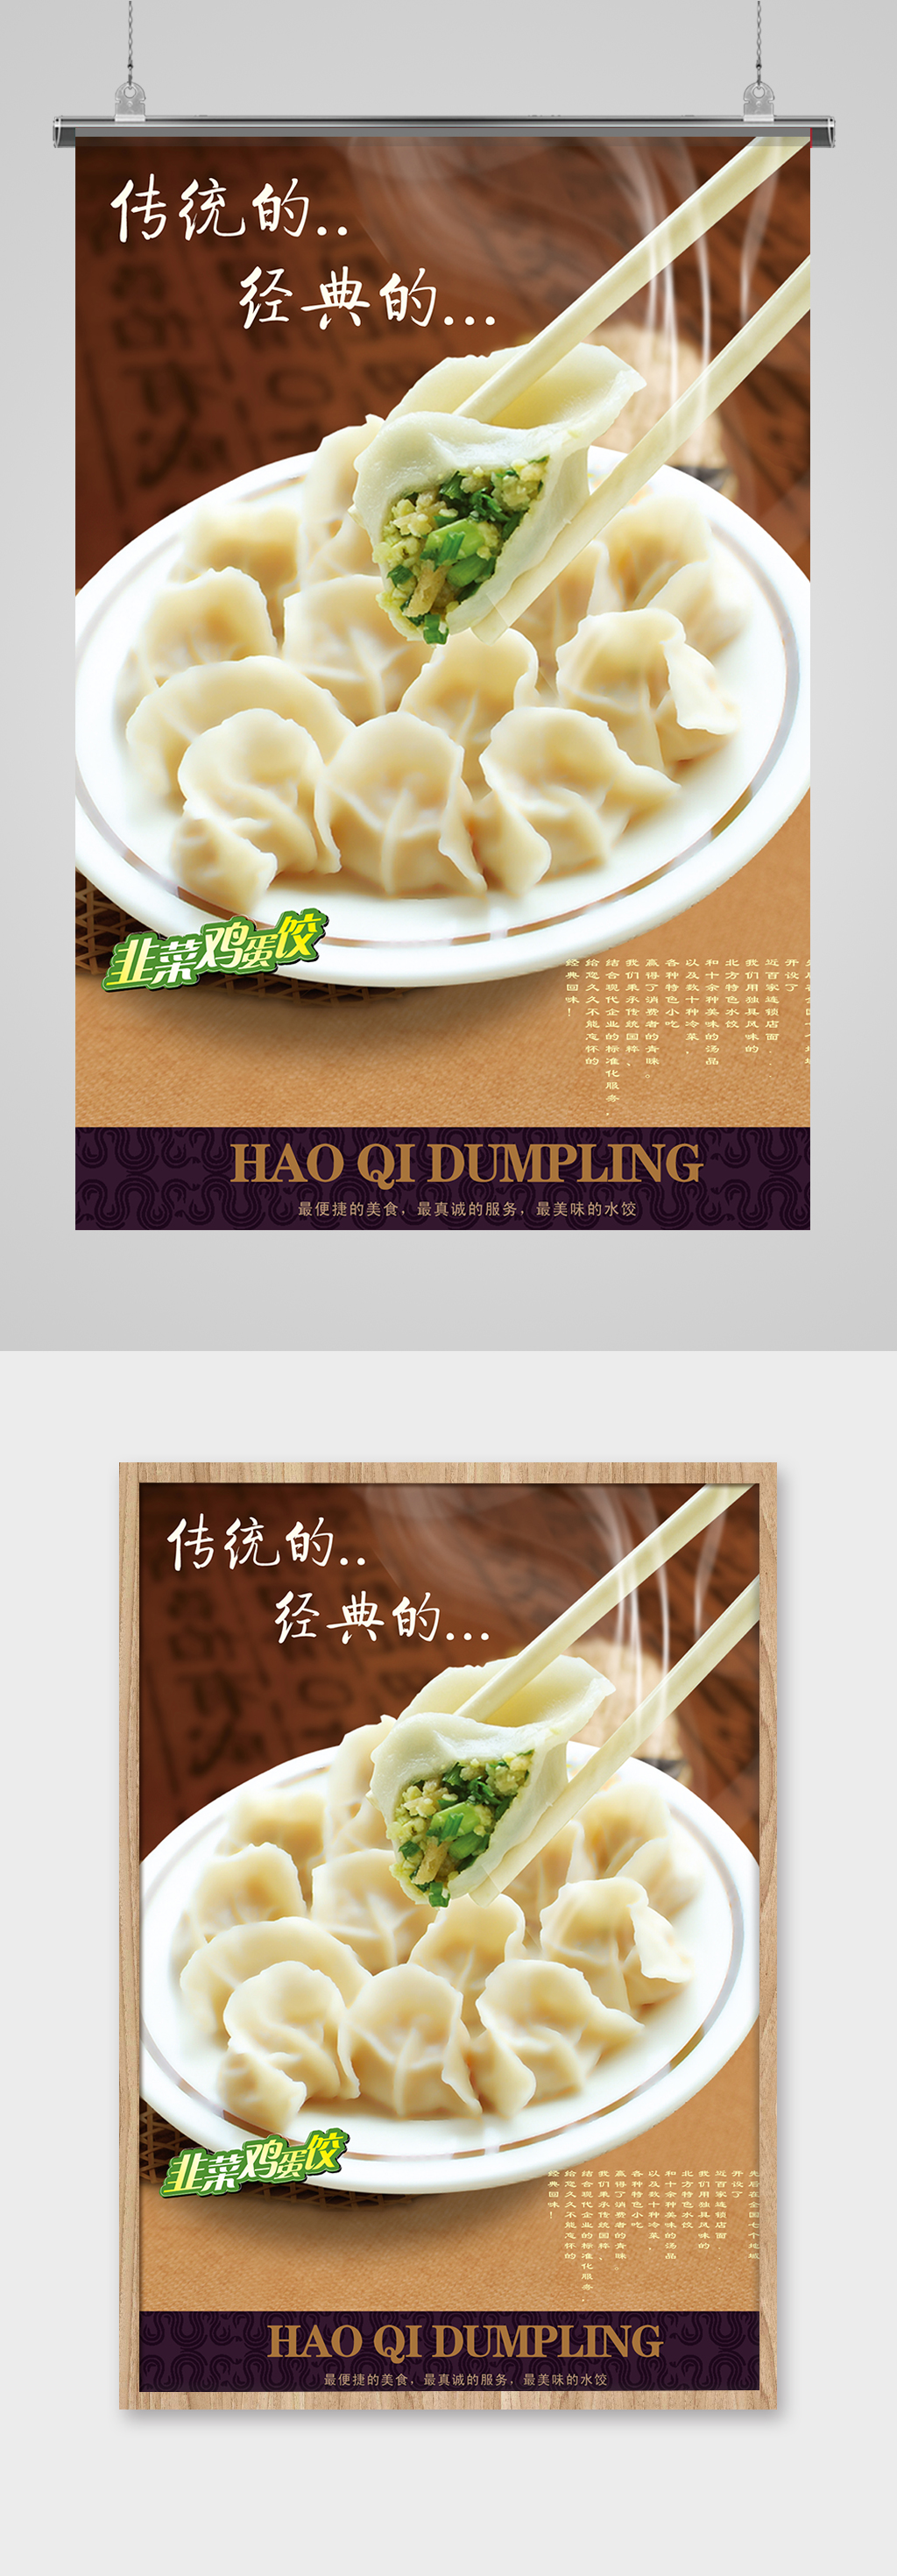 水饺宣传广告图片大全图片